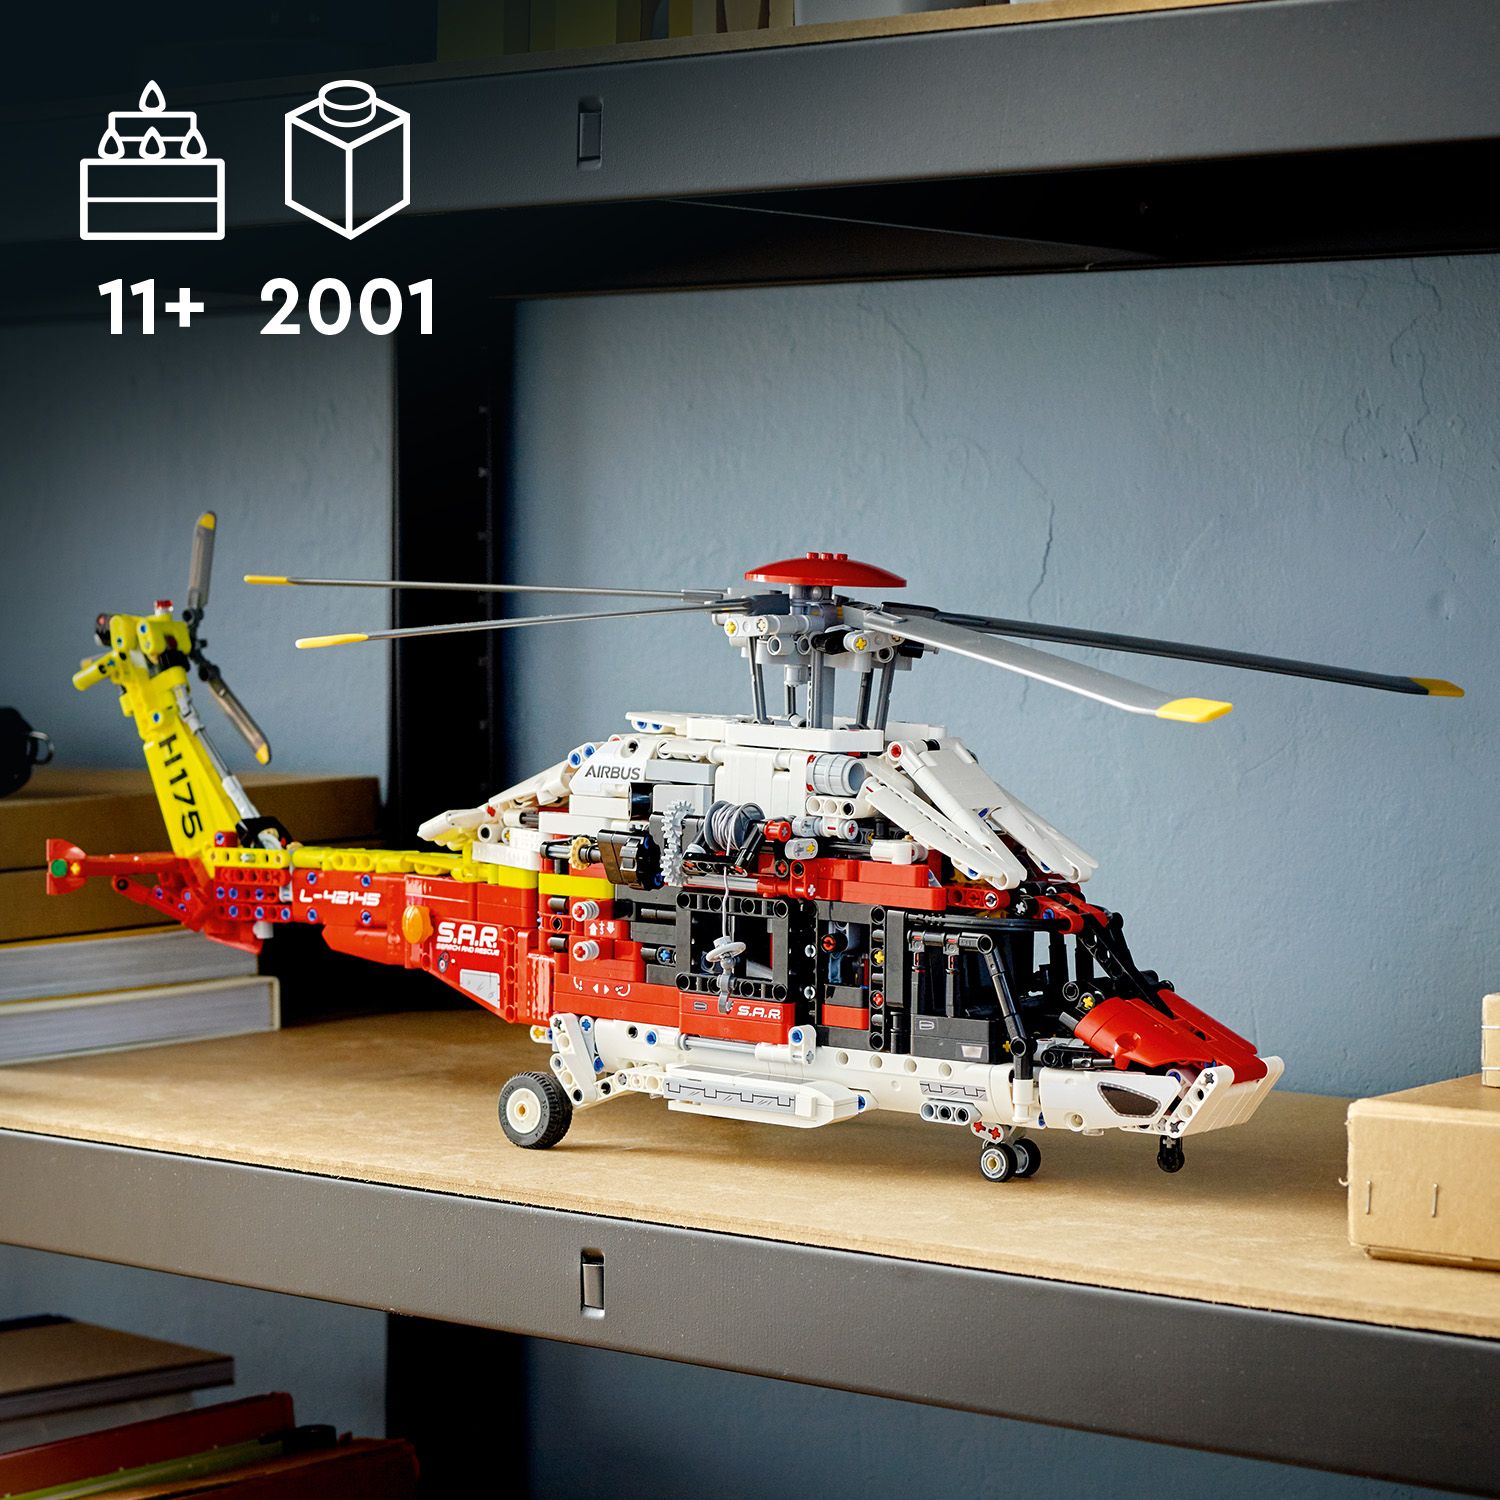 Skvělý dárek pro děti, které milují modely vrtulníků